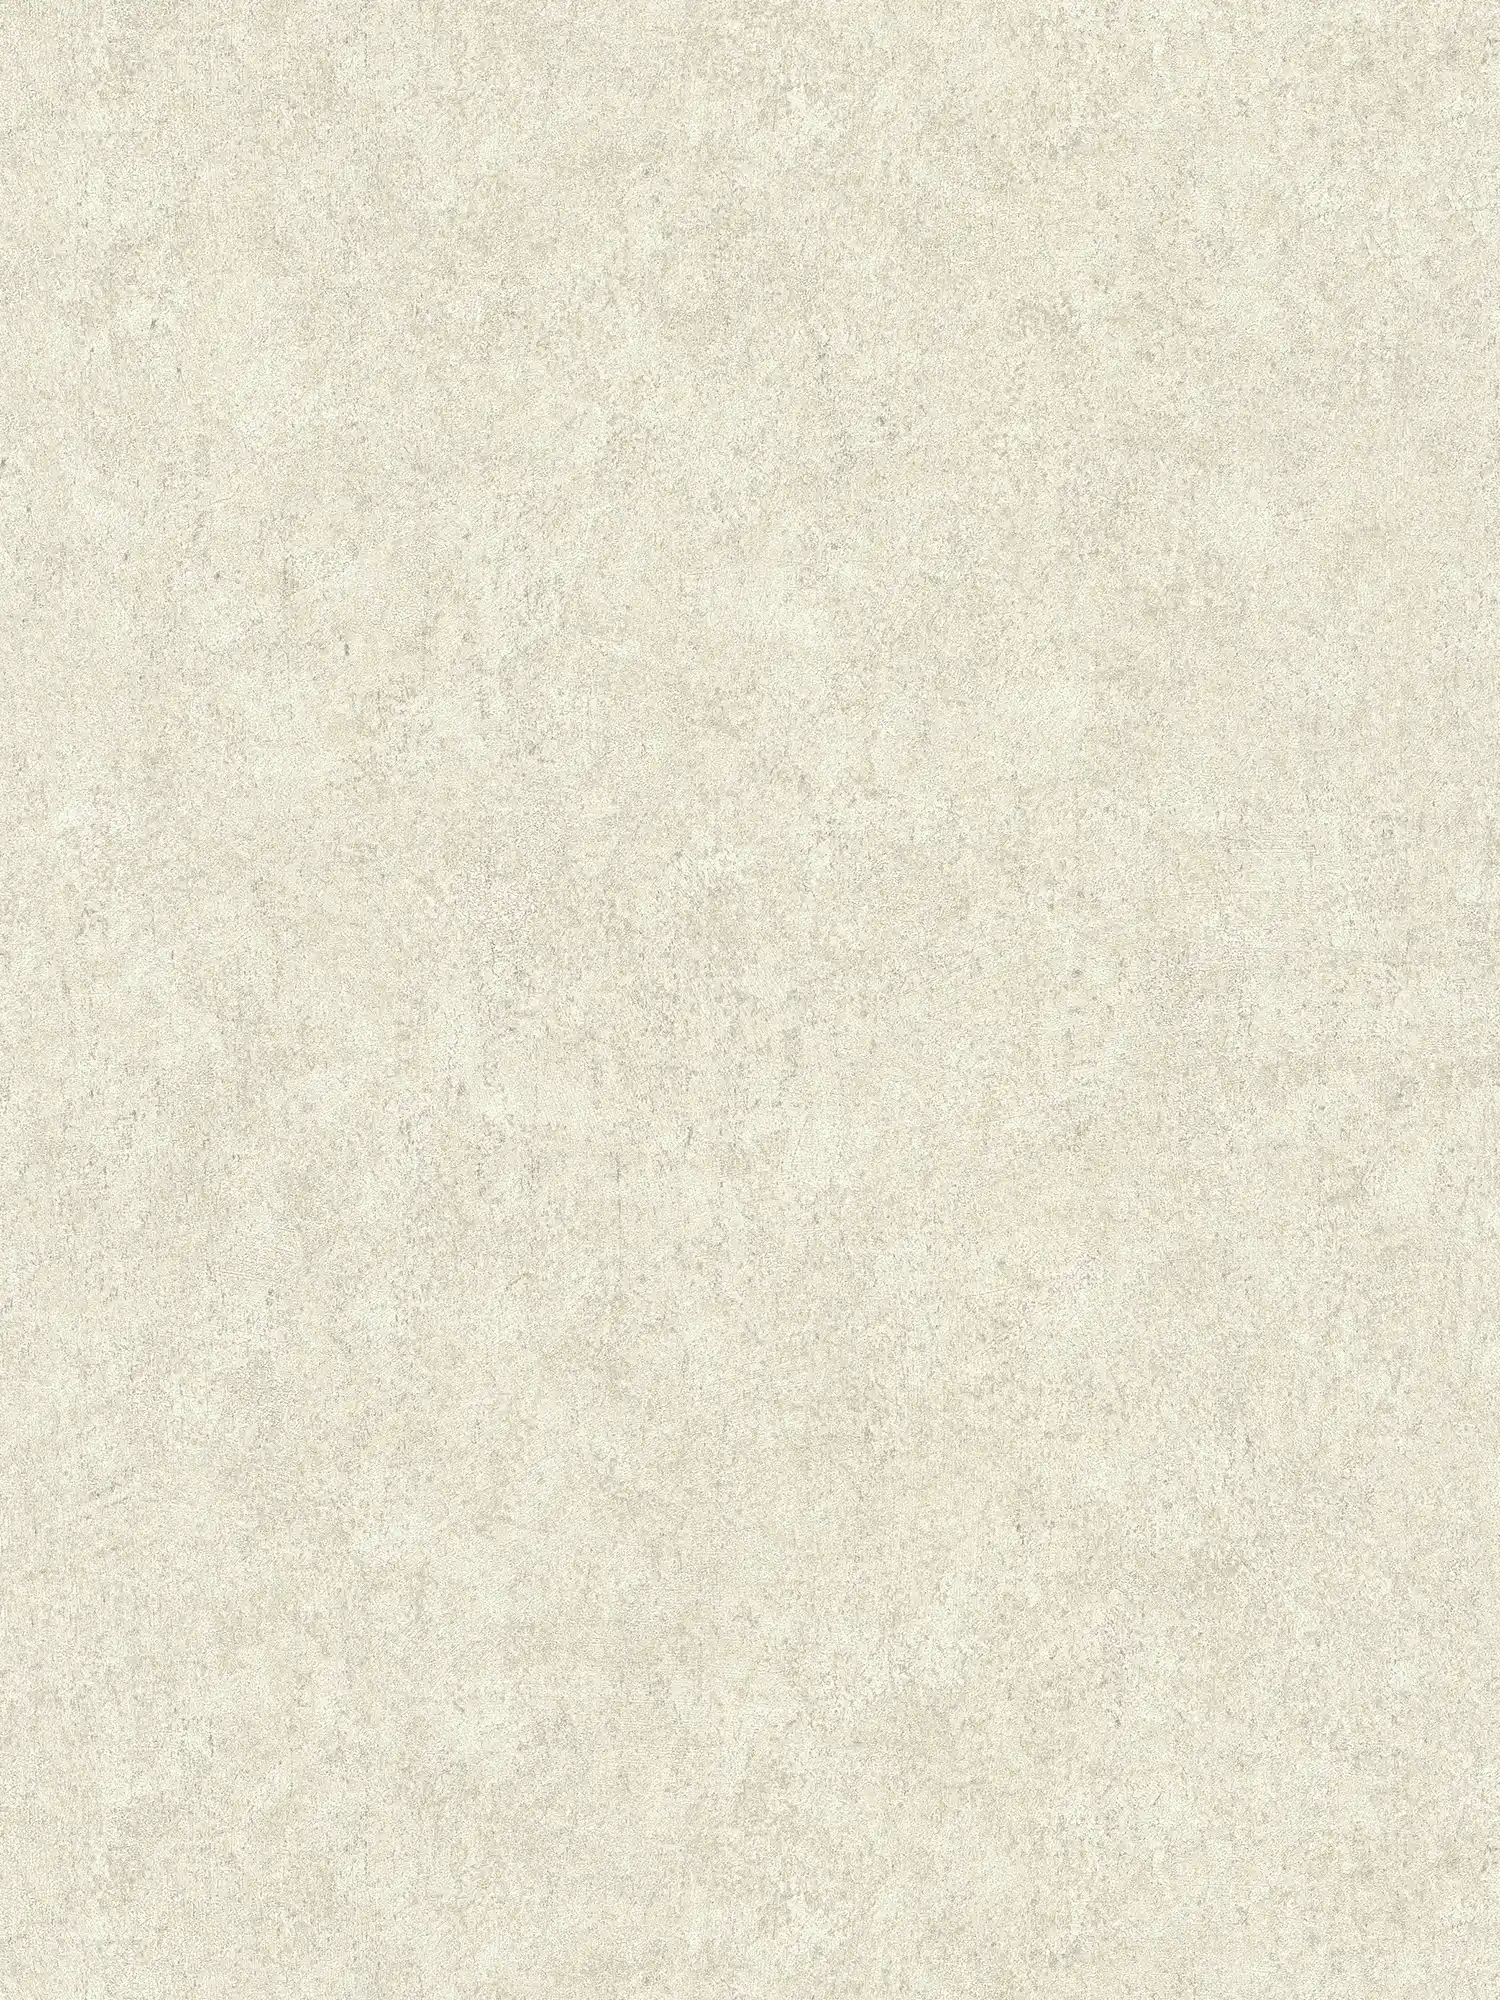 Papier peint uni beige, satiné avec structure crépi
